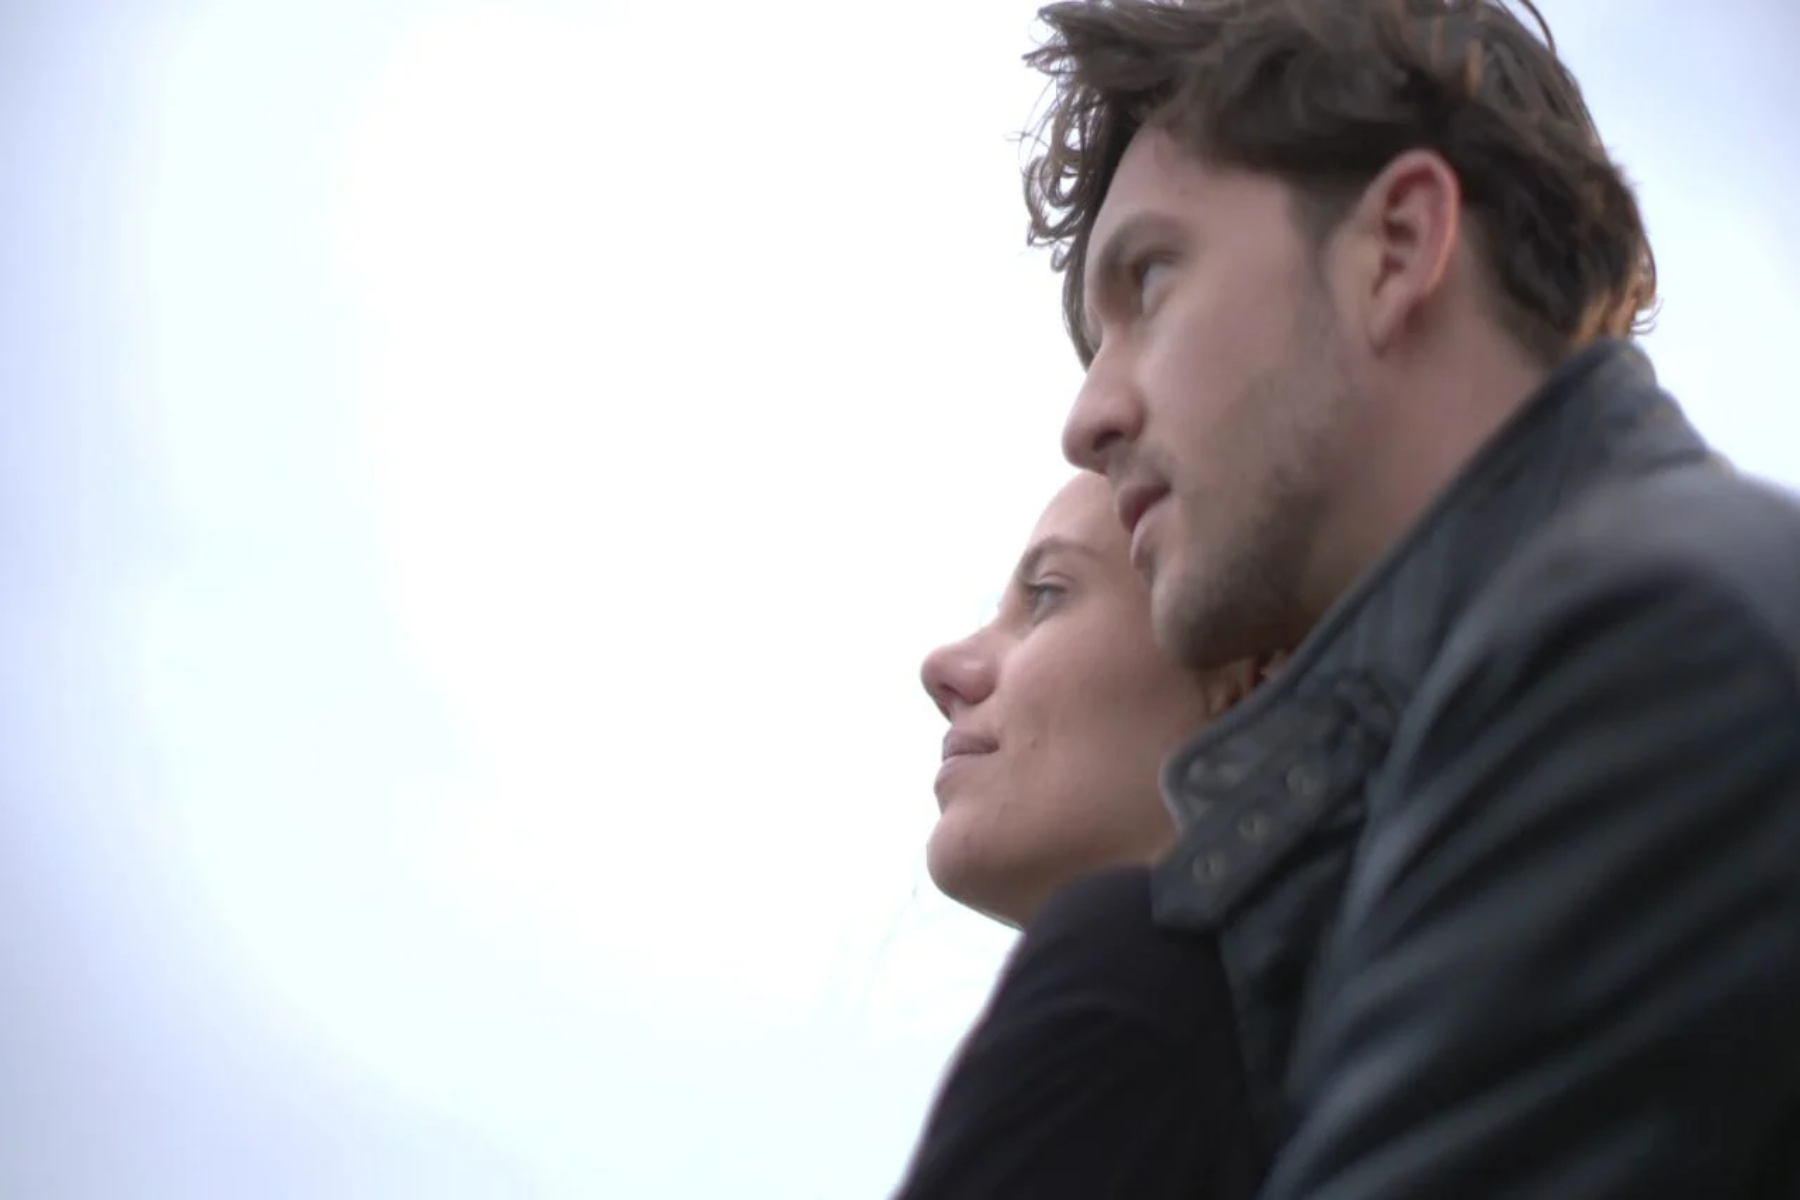 Μαύρο Ρόδο 23/02: Η Ελισάβετ και ο Πέτρος ζουν τον έρωτά τους στο Μαύρο Ρόδο [trailer]